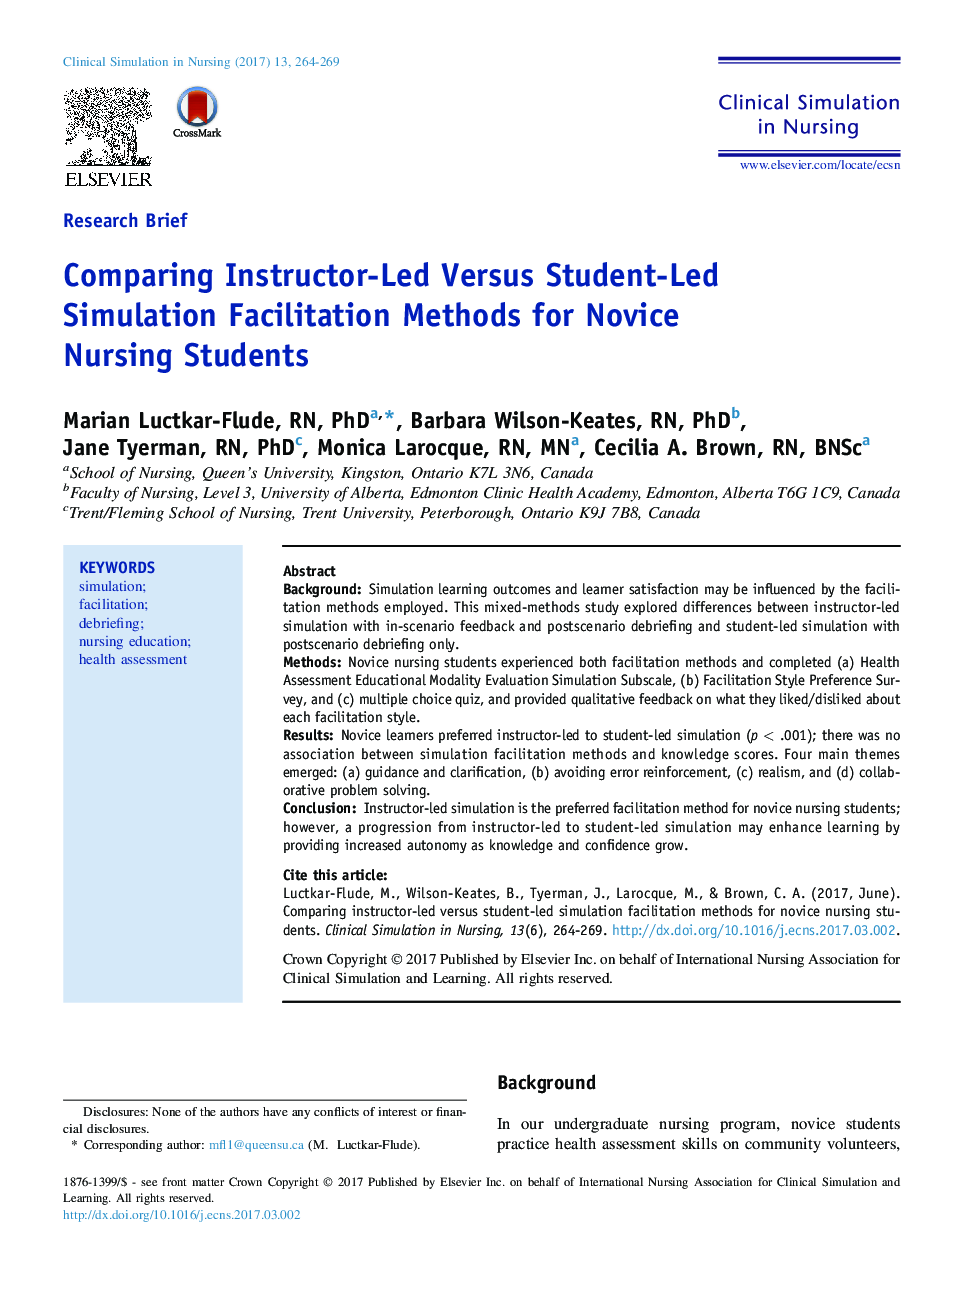 مقایسه روشهای تسهیل شبیه سازی مدرس مبتنی بر رهبری دانشجویان در دانشجویان پرستاری تازه کار 